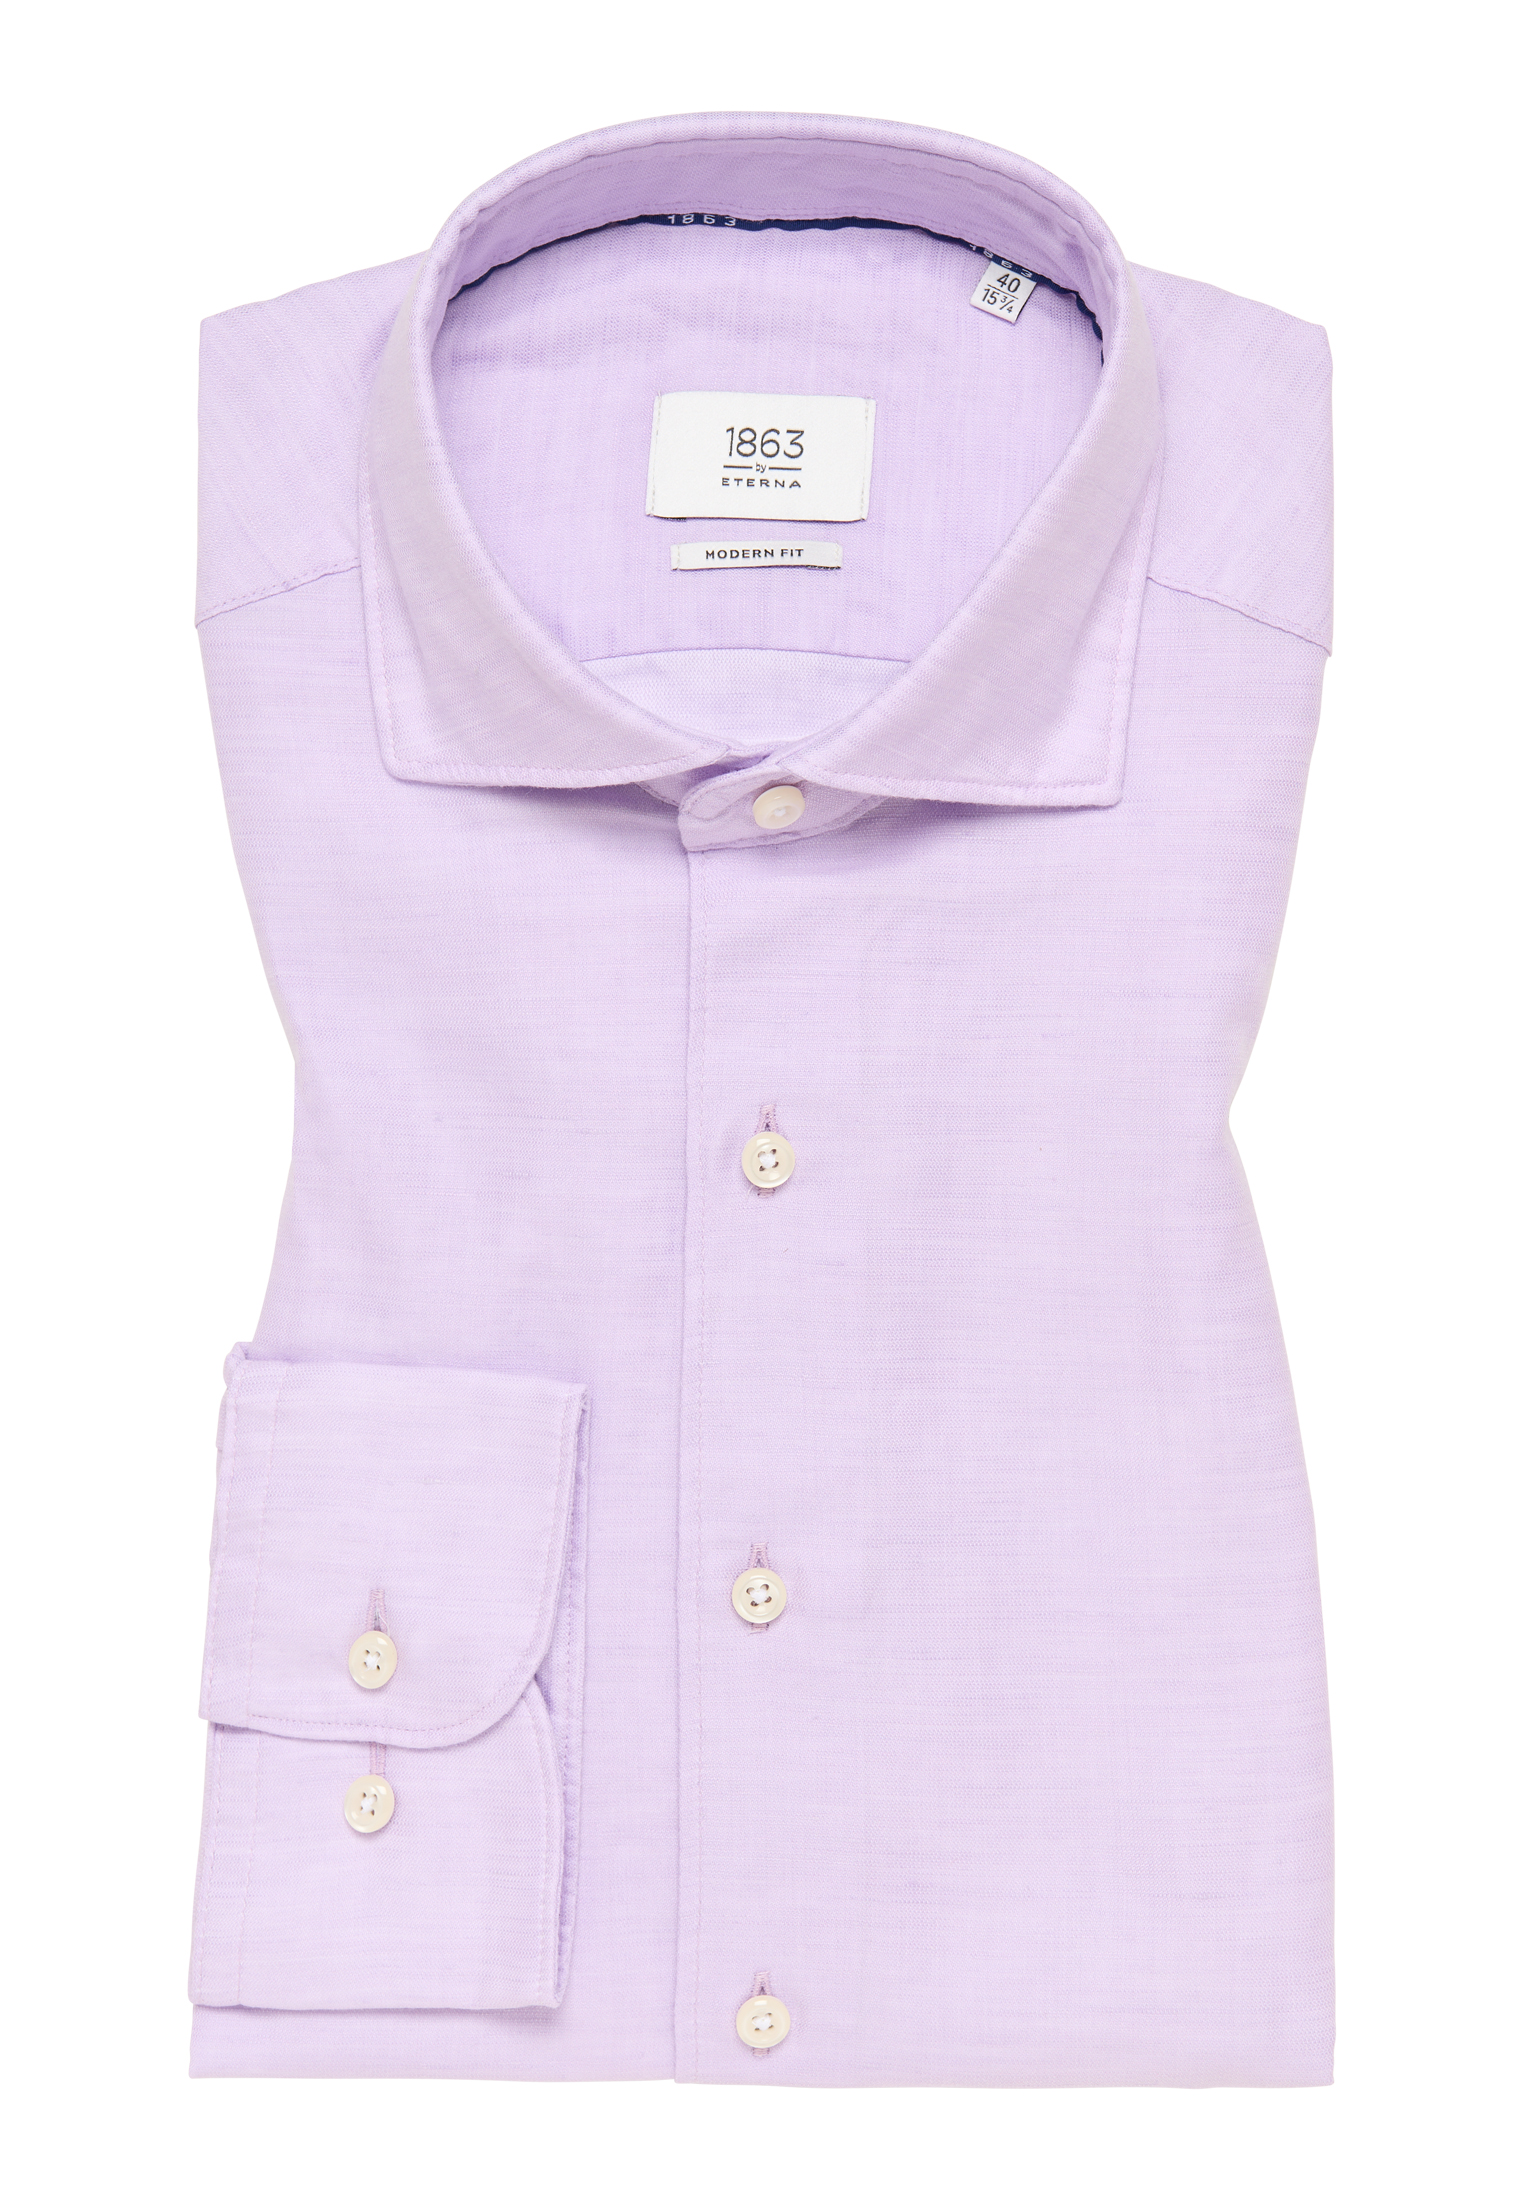 MODERN FIT Linen Shirt in lavender plain | lavender | 46 | long sleeve |  1SH00629-09-11-46-1/1